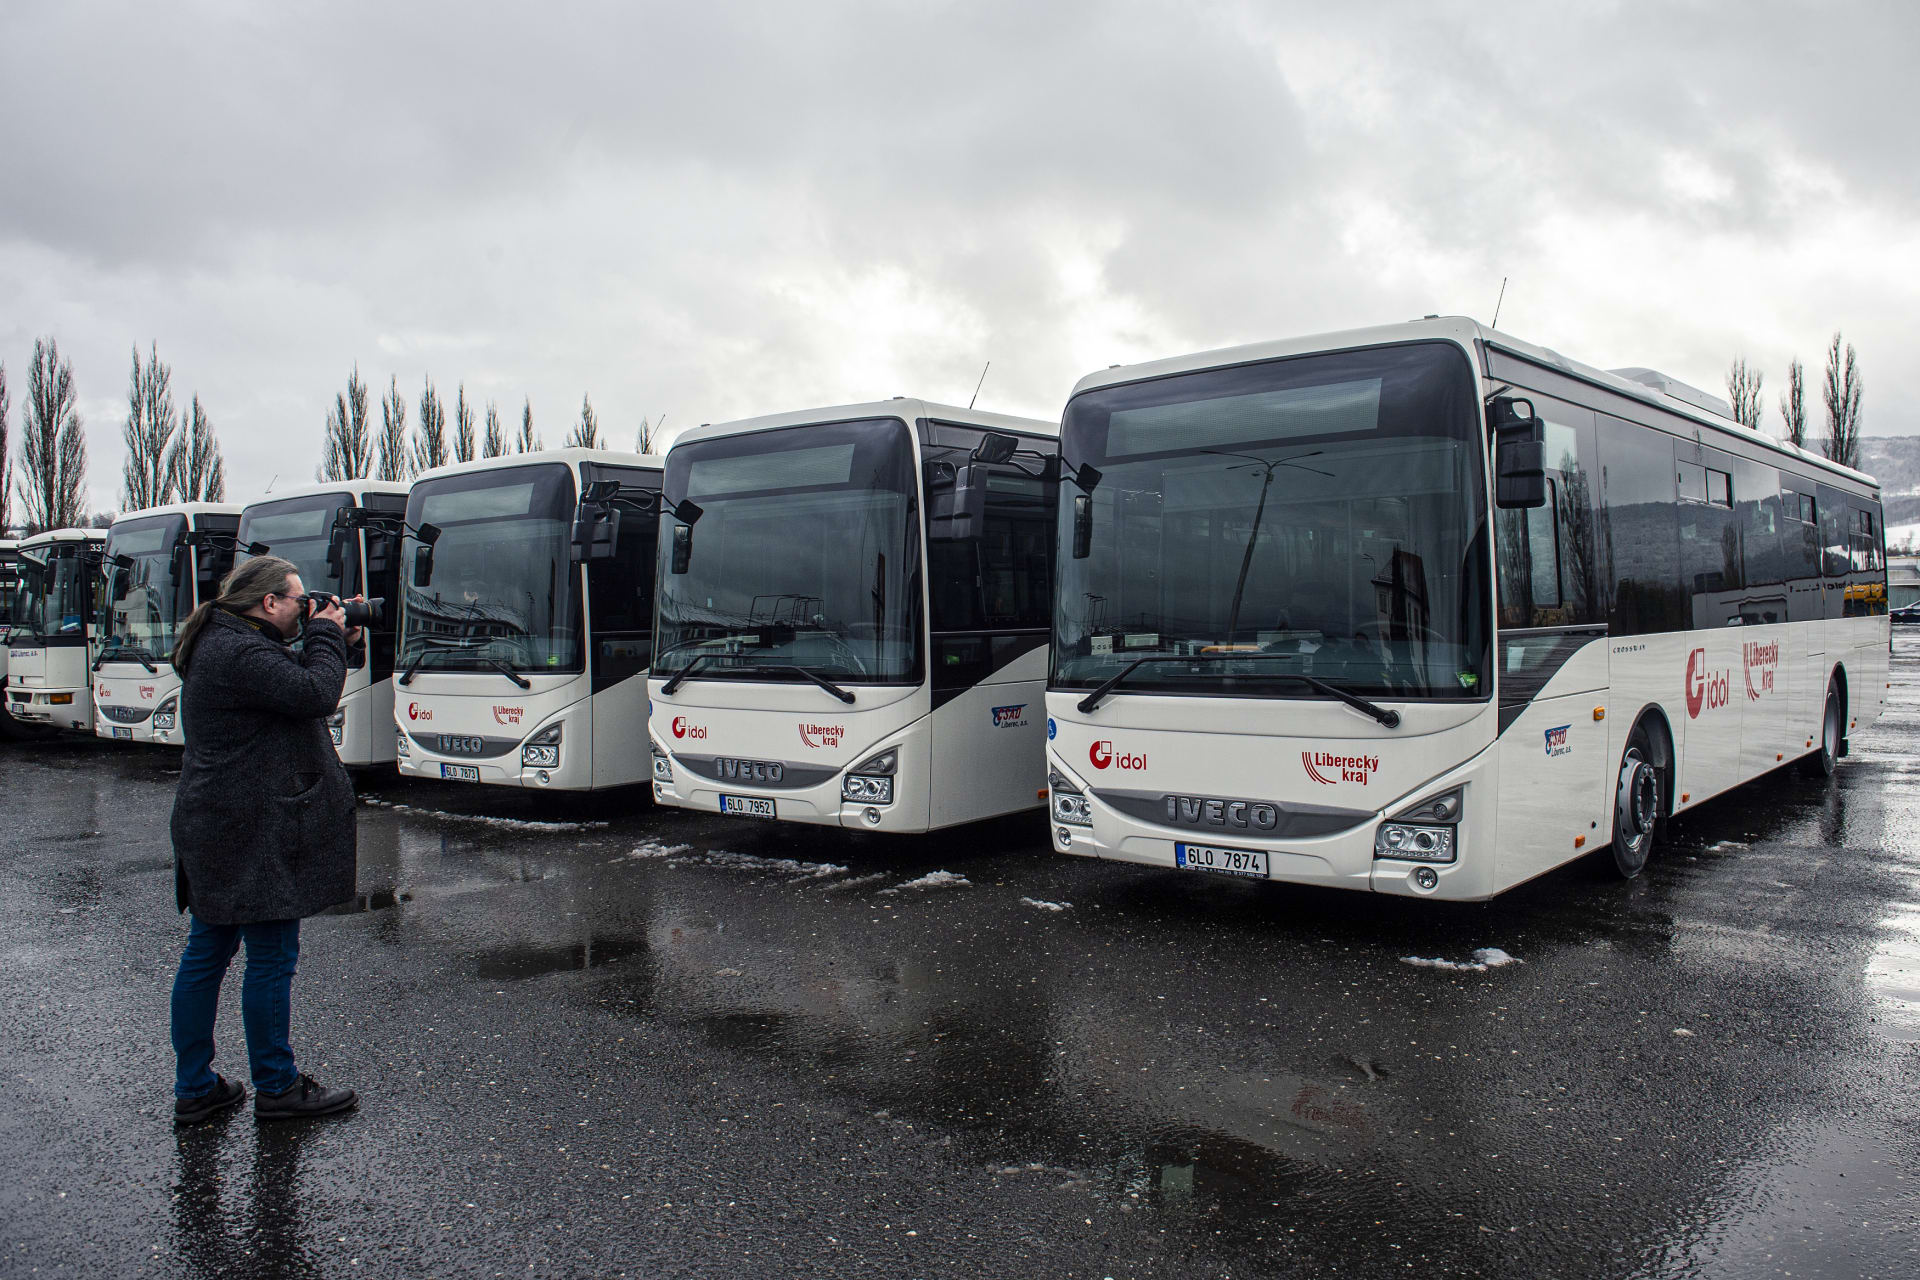 Autobusy, které zajišťují dopravu v Libereckém kraji. (Ilustrační snímek)